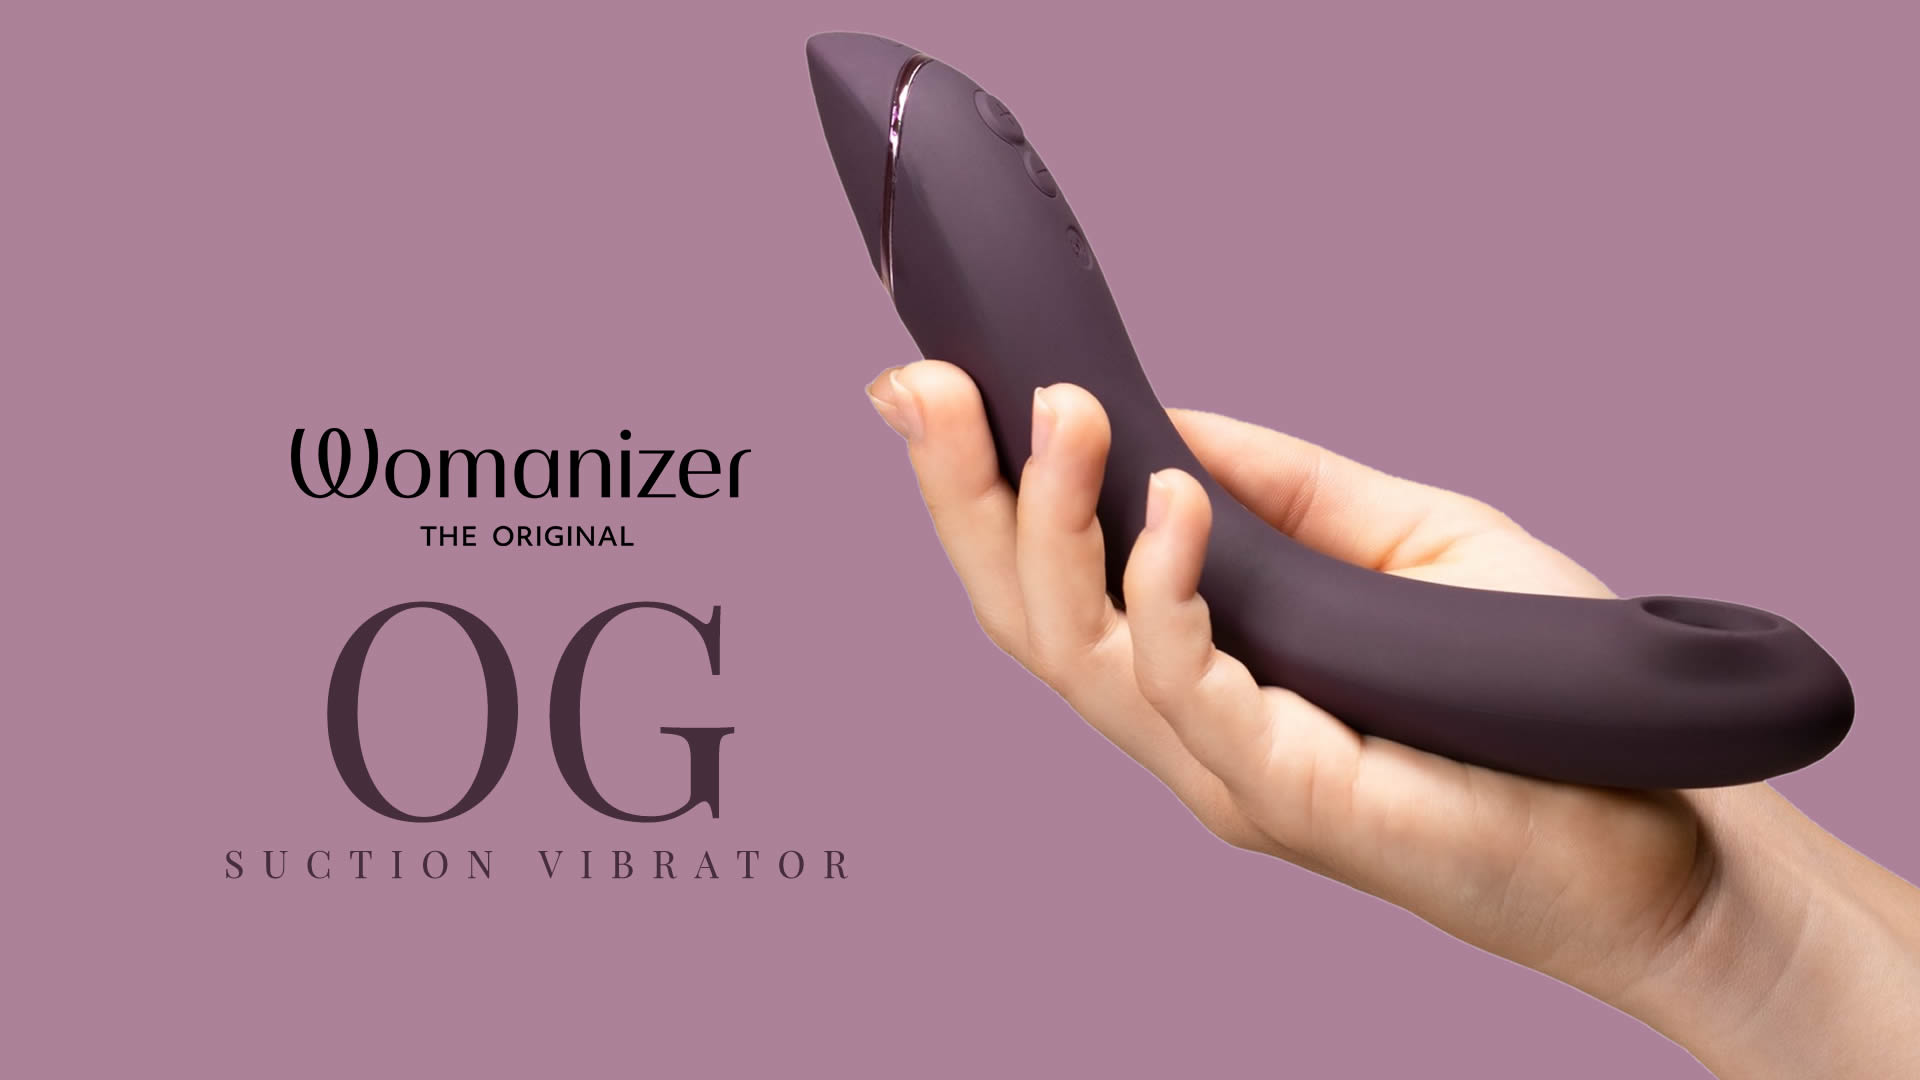 Womanizer OG Suction Vibrator